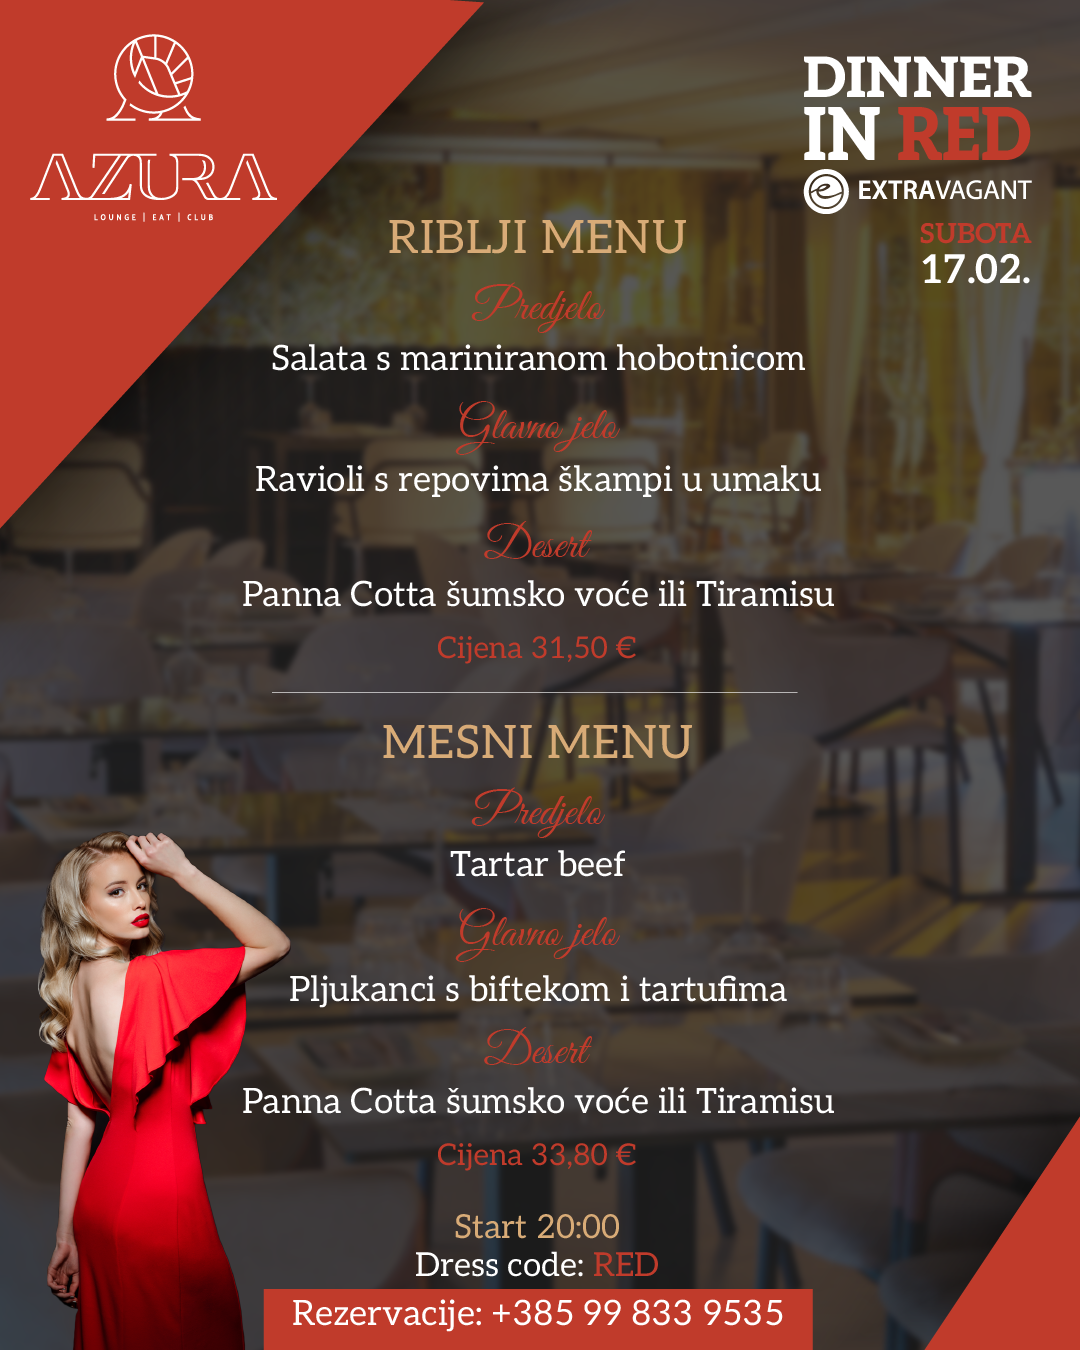 Azura priprema večeru za pamćenje; "Dinner in red"